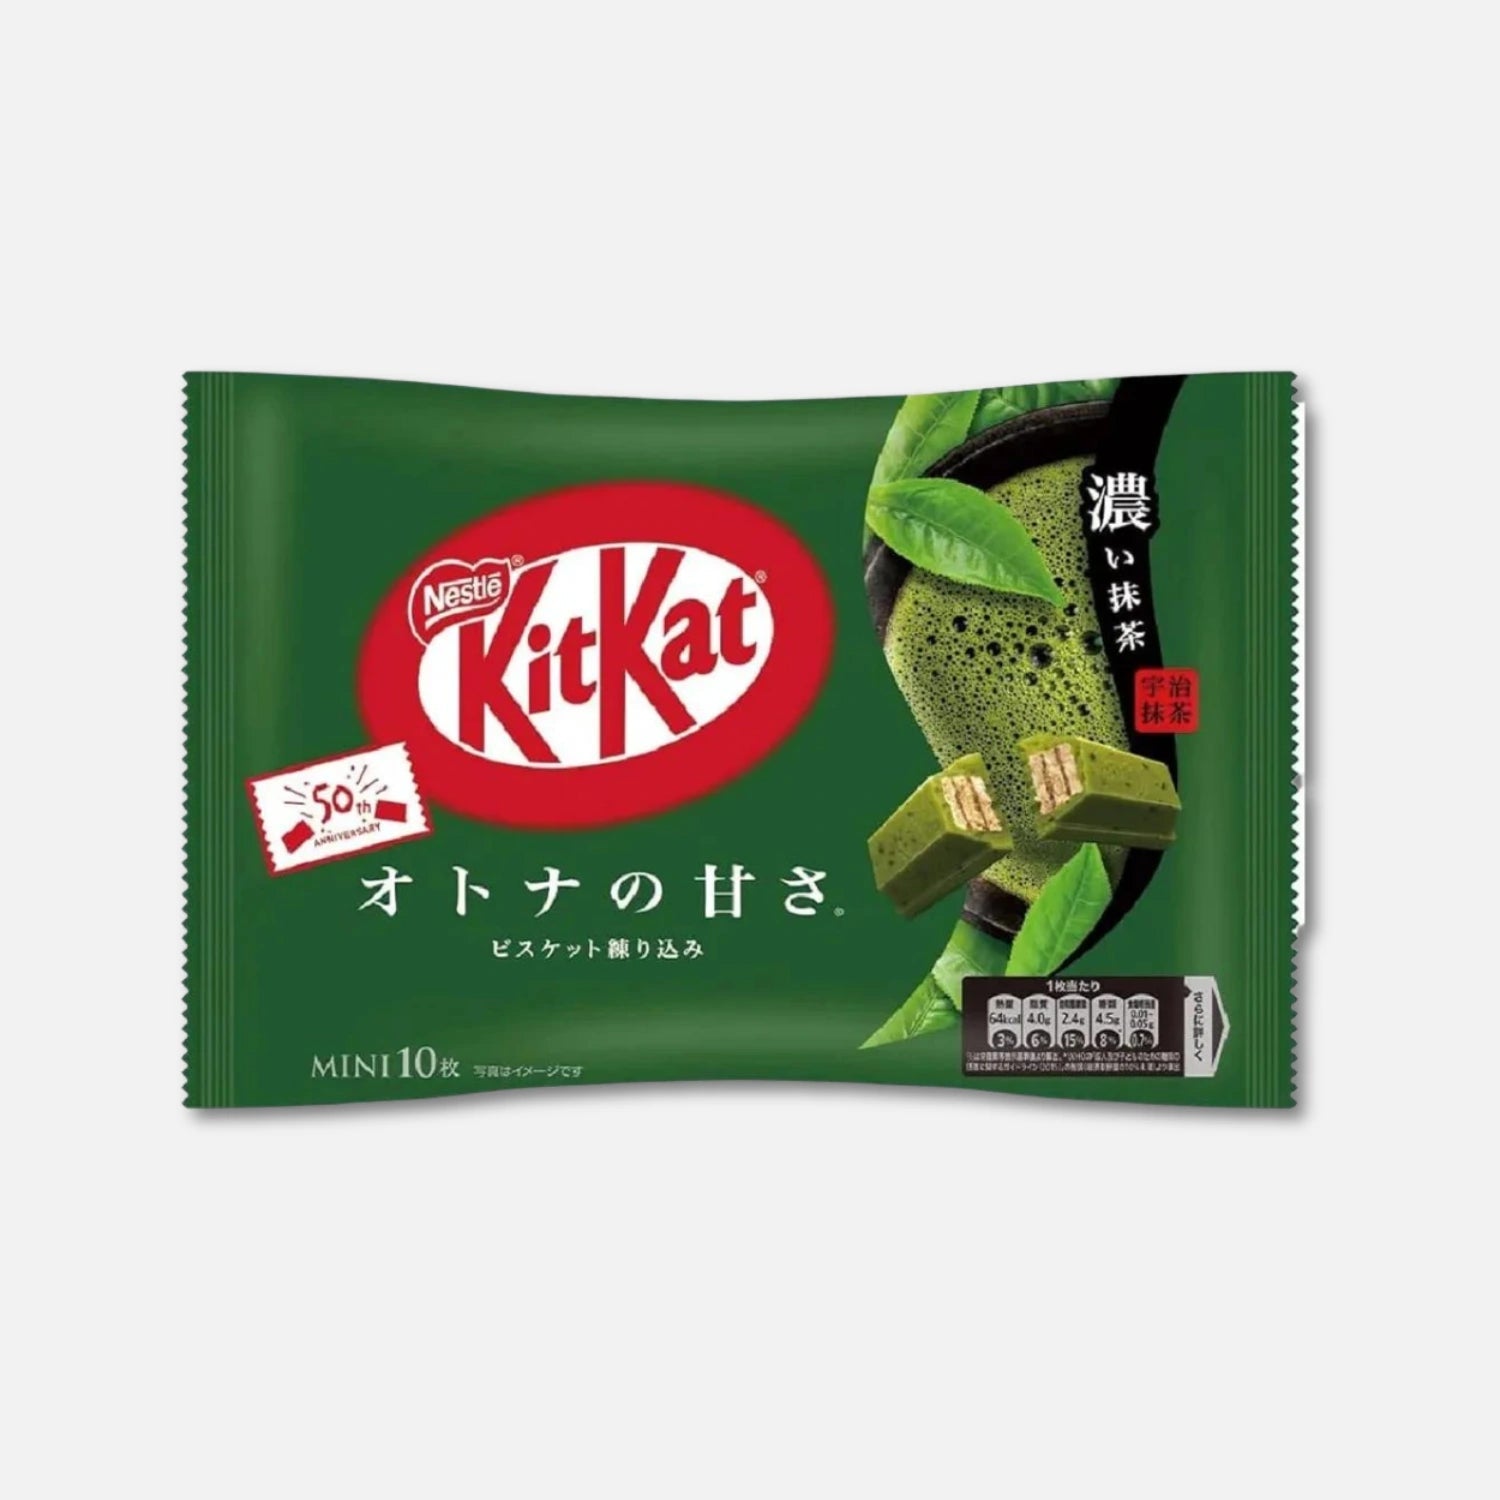 Kit Kat Japan Rich Matcha Chocolate (7/10 Mini Pieces) - Buy Me Japan